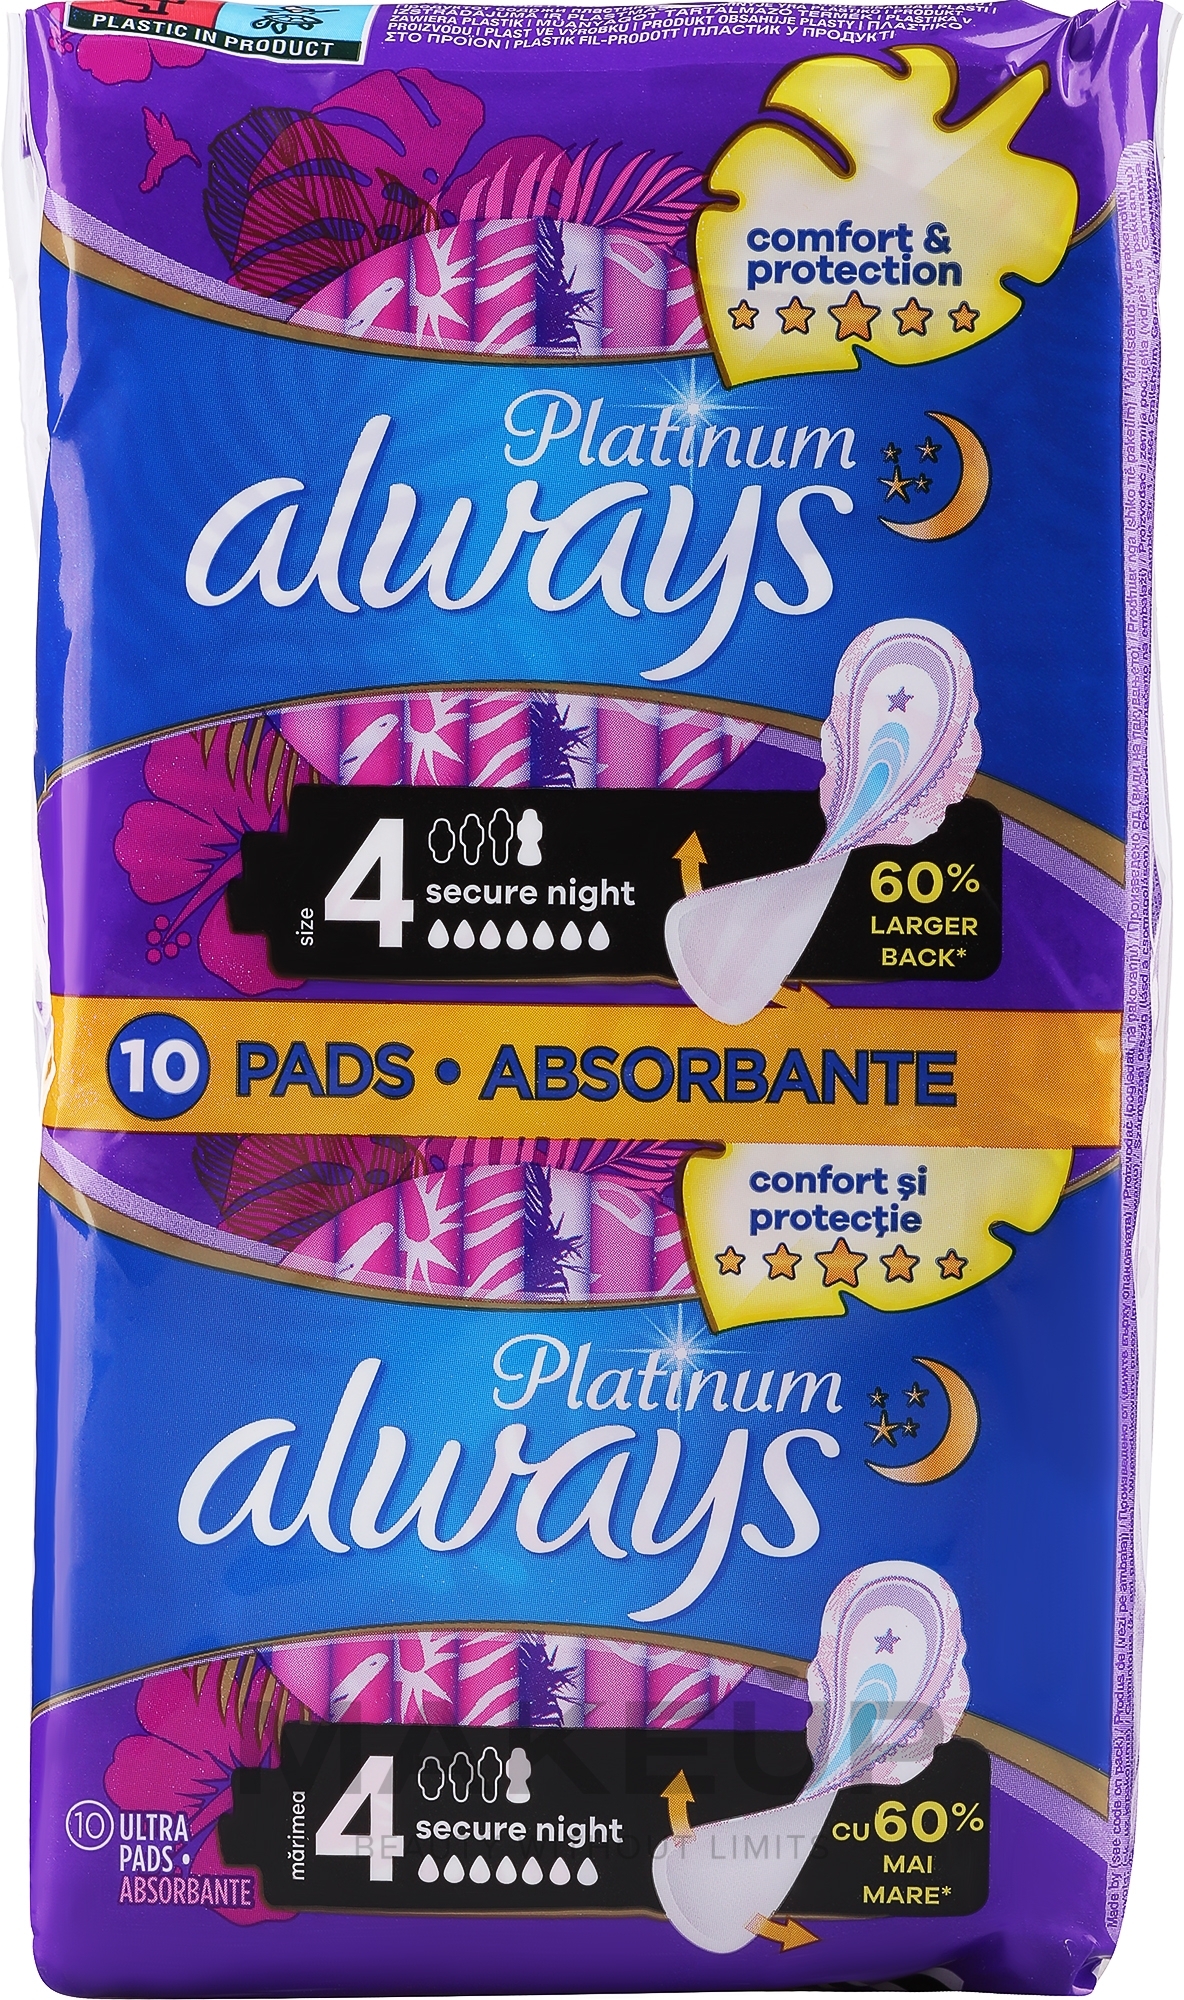 Wkładki higieniczne, rozmiar 4, 10 szt. - Always Platinum Secure Night — Zdjęcie 10 szt.